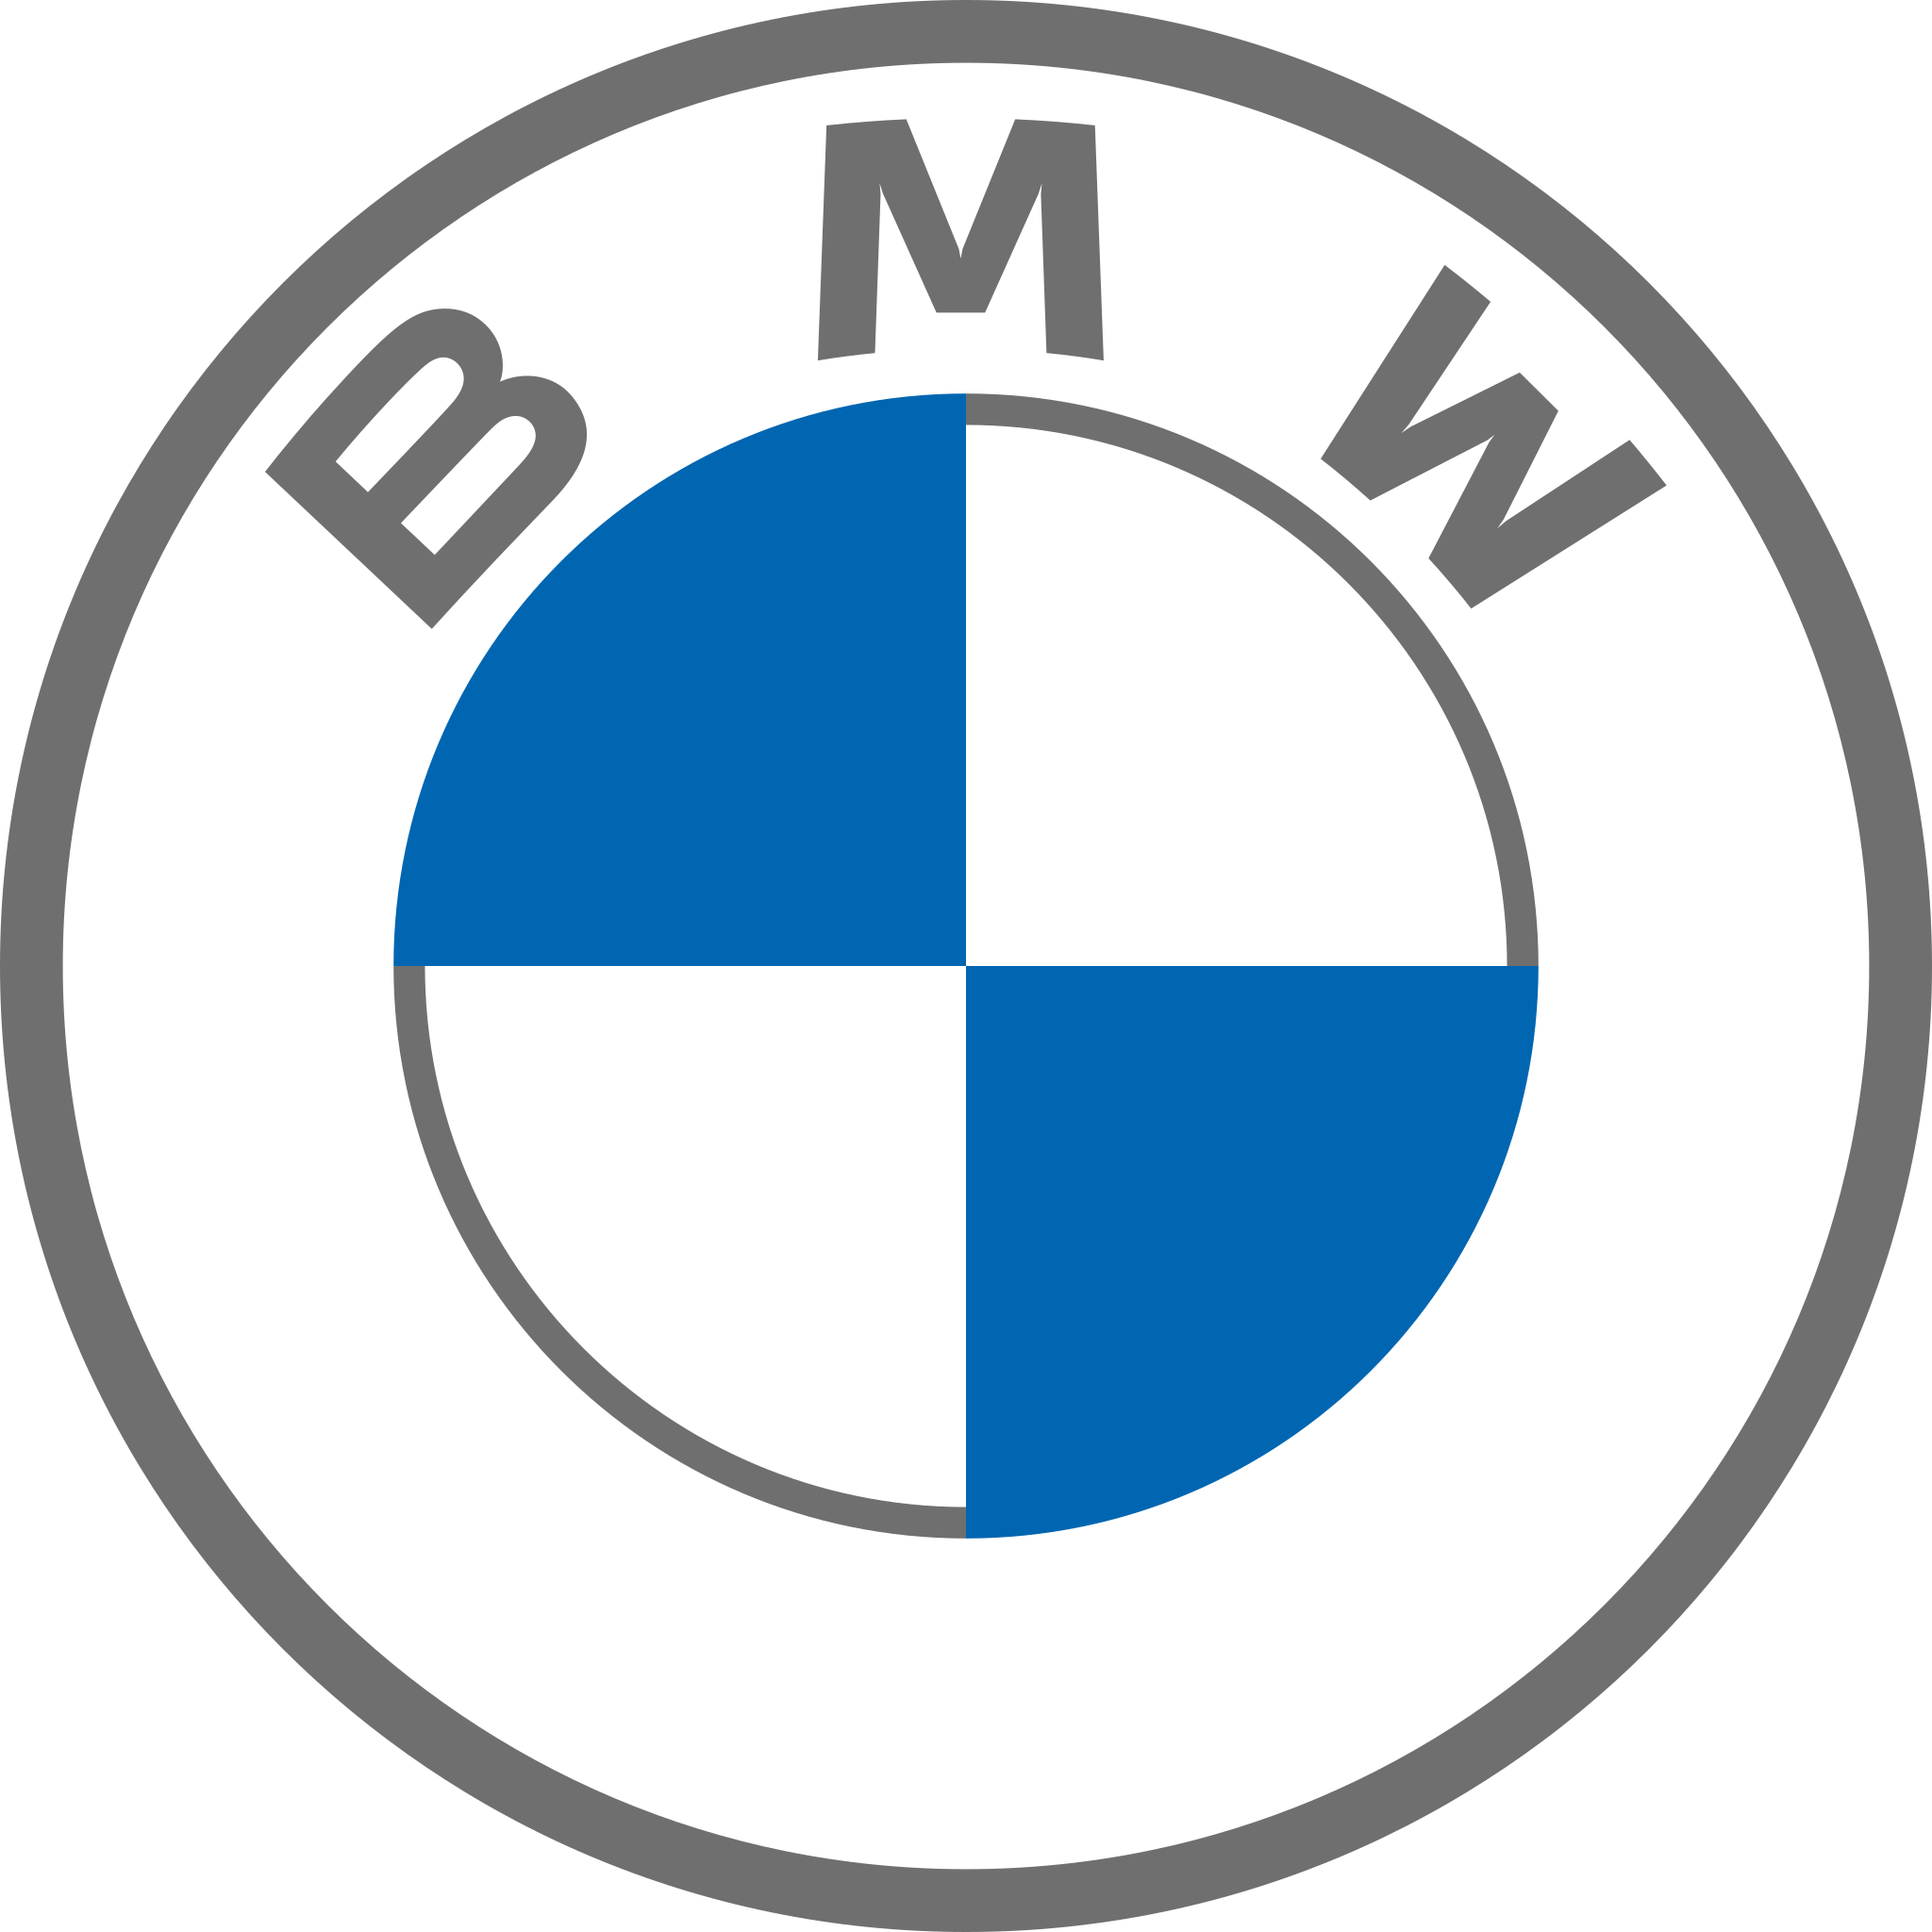 Datei:Volkswagen logo 2019.svg – Wikipedia